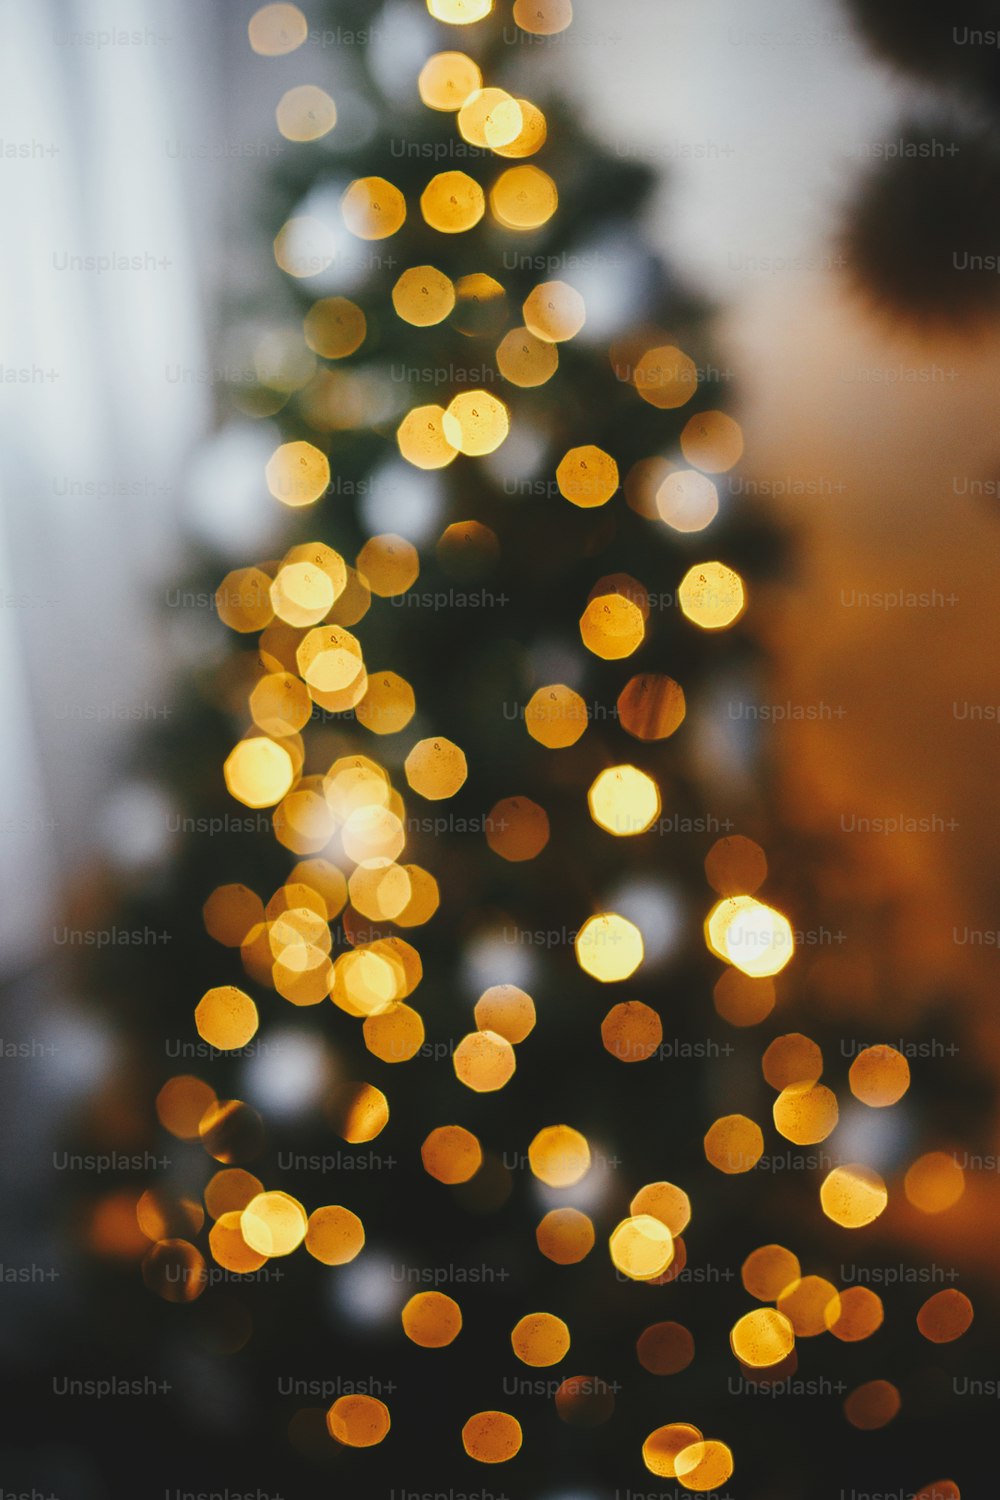 Sfondo natalizio. Le luci dell'albero di Natale sfocate nella sala festiva serale. Bokeh dell'illuminazione incandescente. Suggestiva vigilia di Natale. Buon Natale e Buone Feste